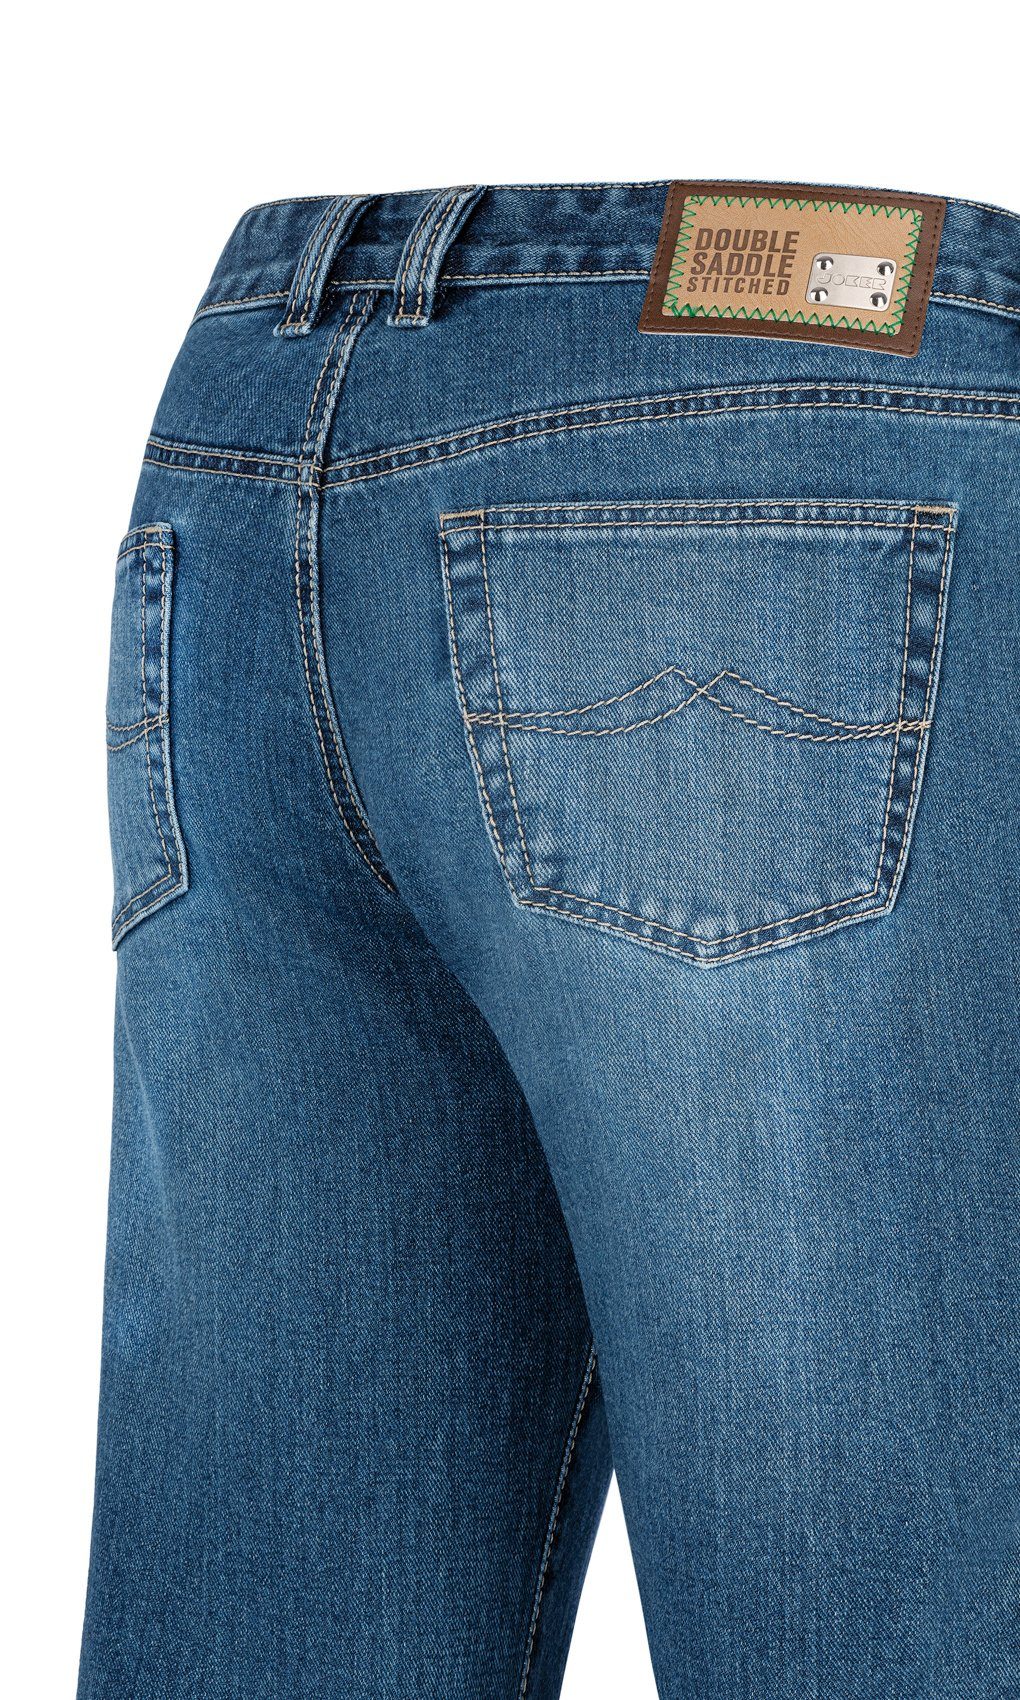 5-Pocket-Jeans authentic Joker Clark Japan Denim 1282200 stabiler used